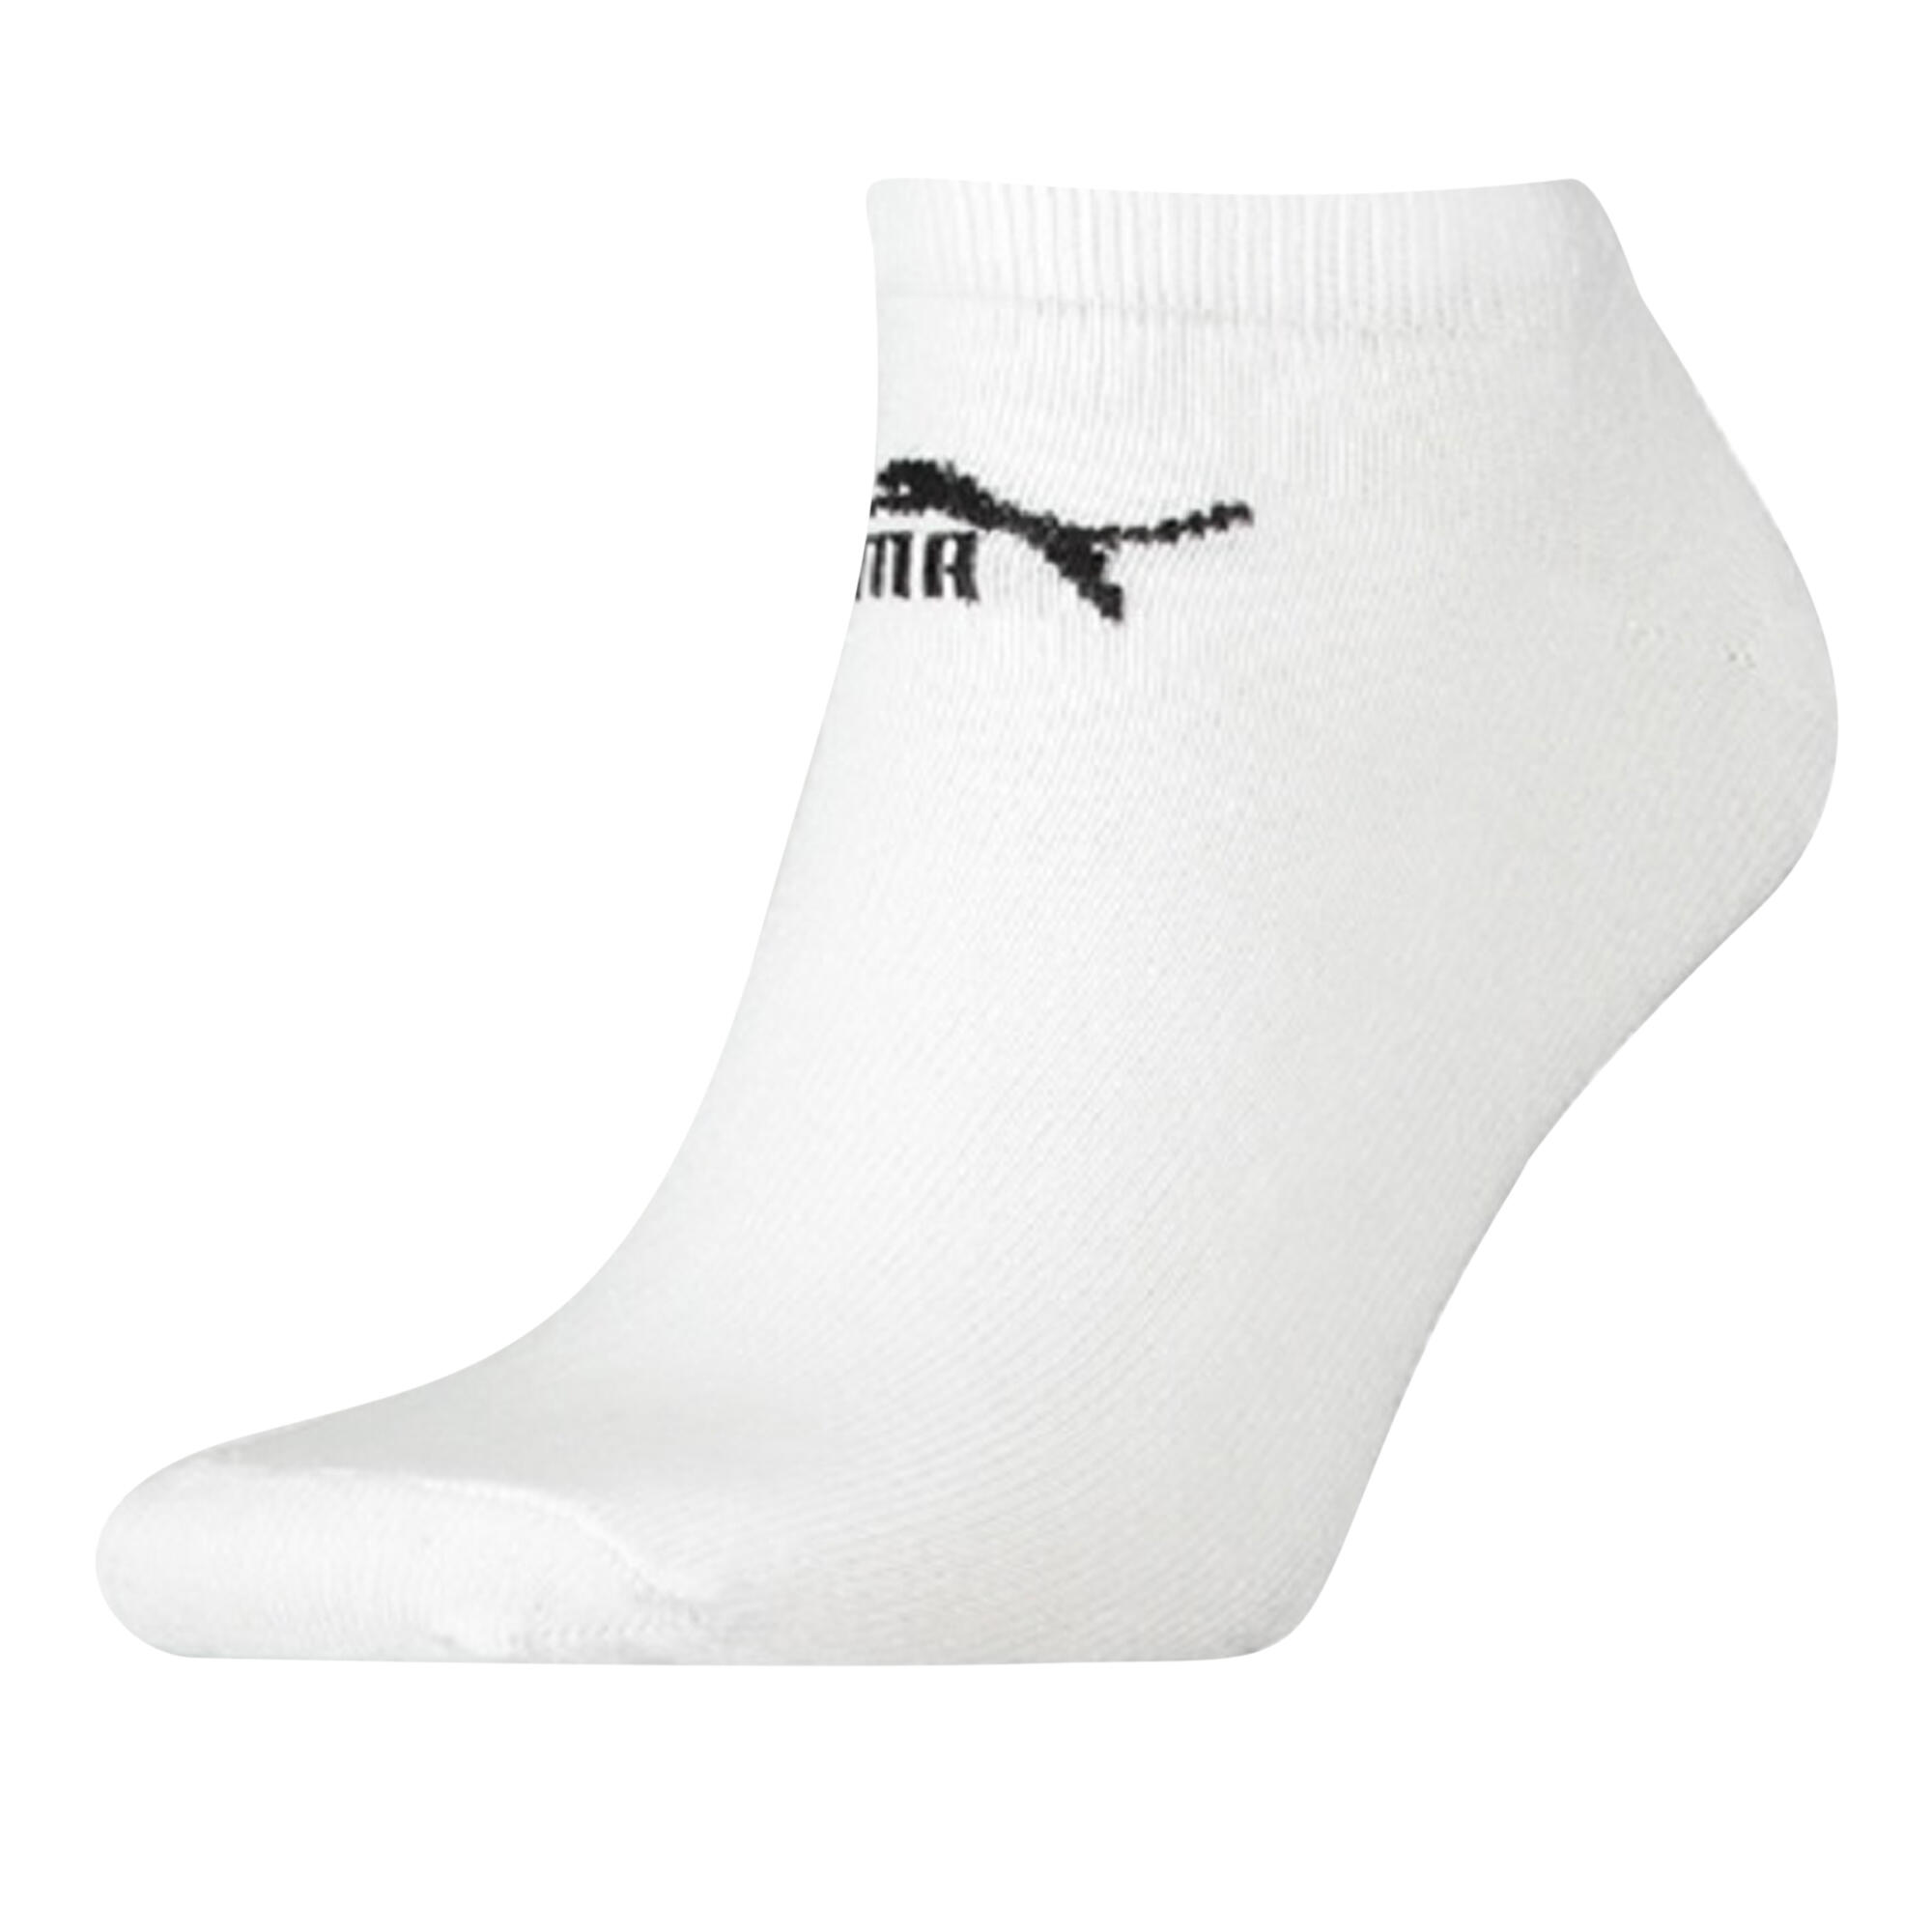 PUMA Unisex Adult Trainer Socks (Pack of 3) (White)